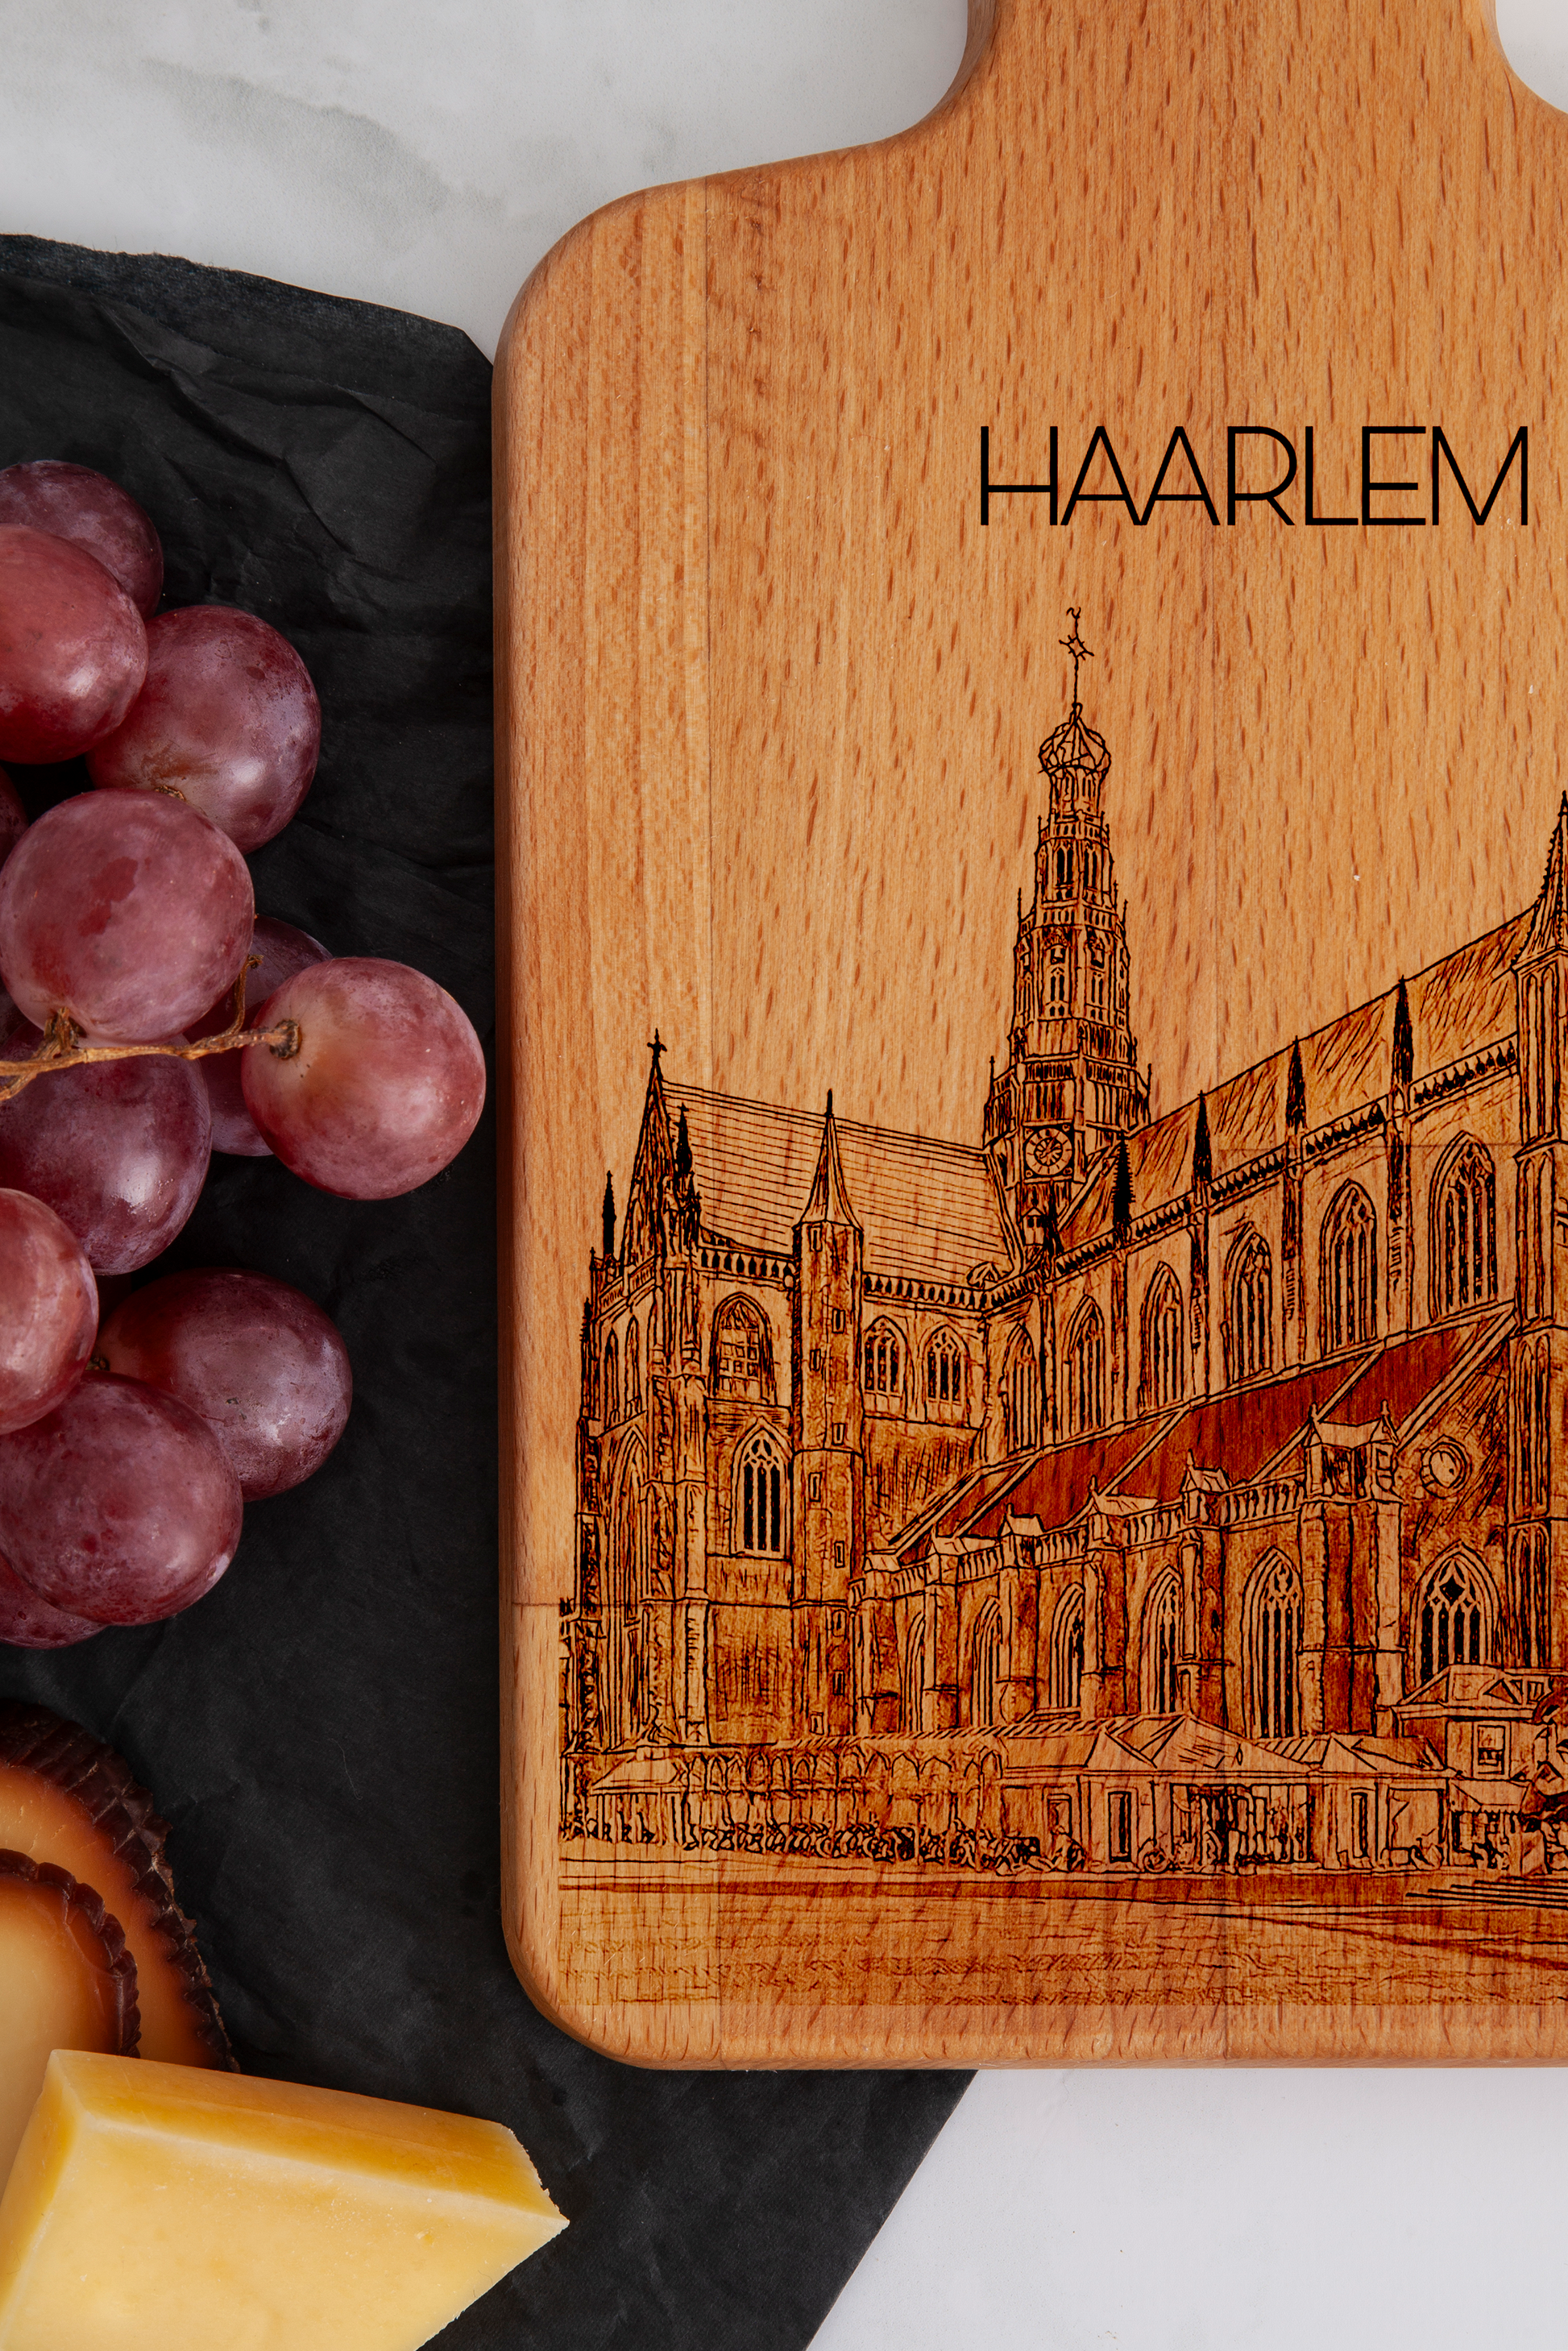 Haarlem, Grote Kerk, cheese board, close-up